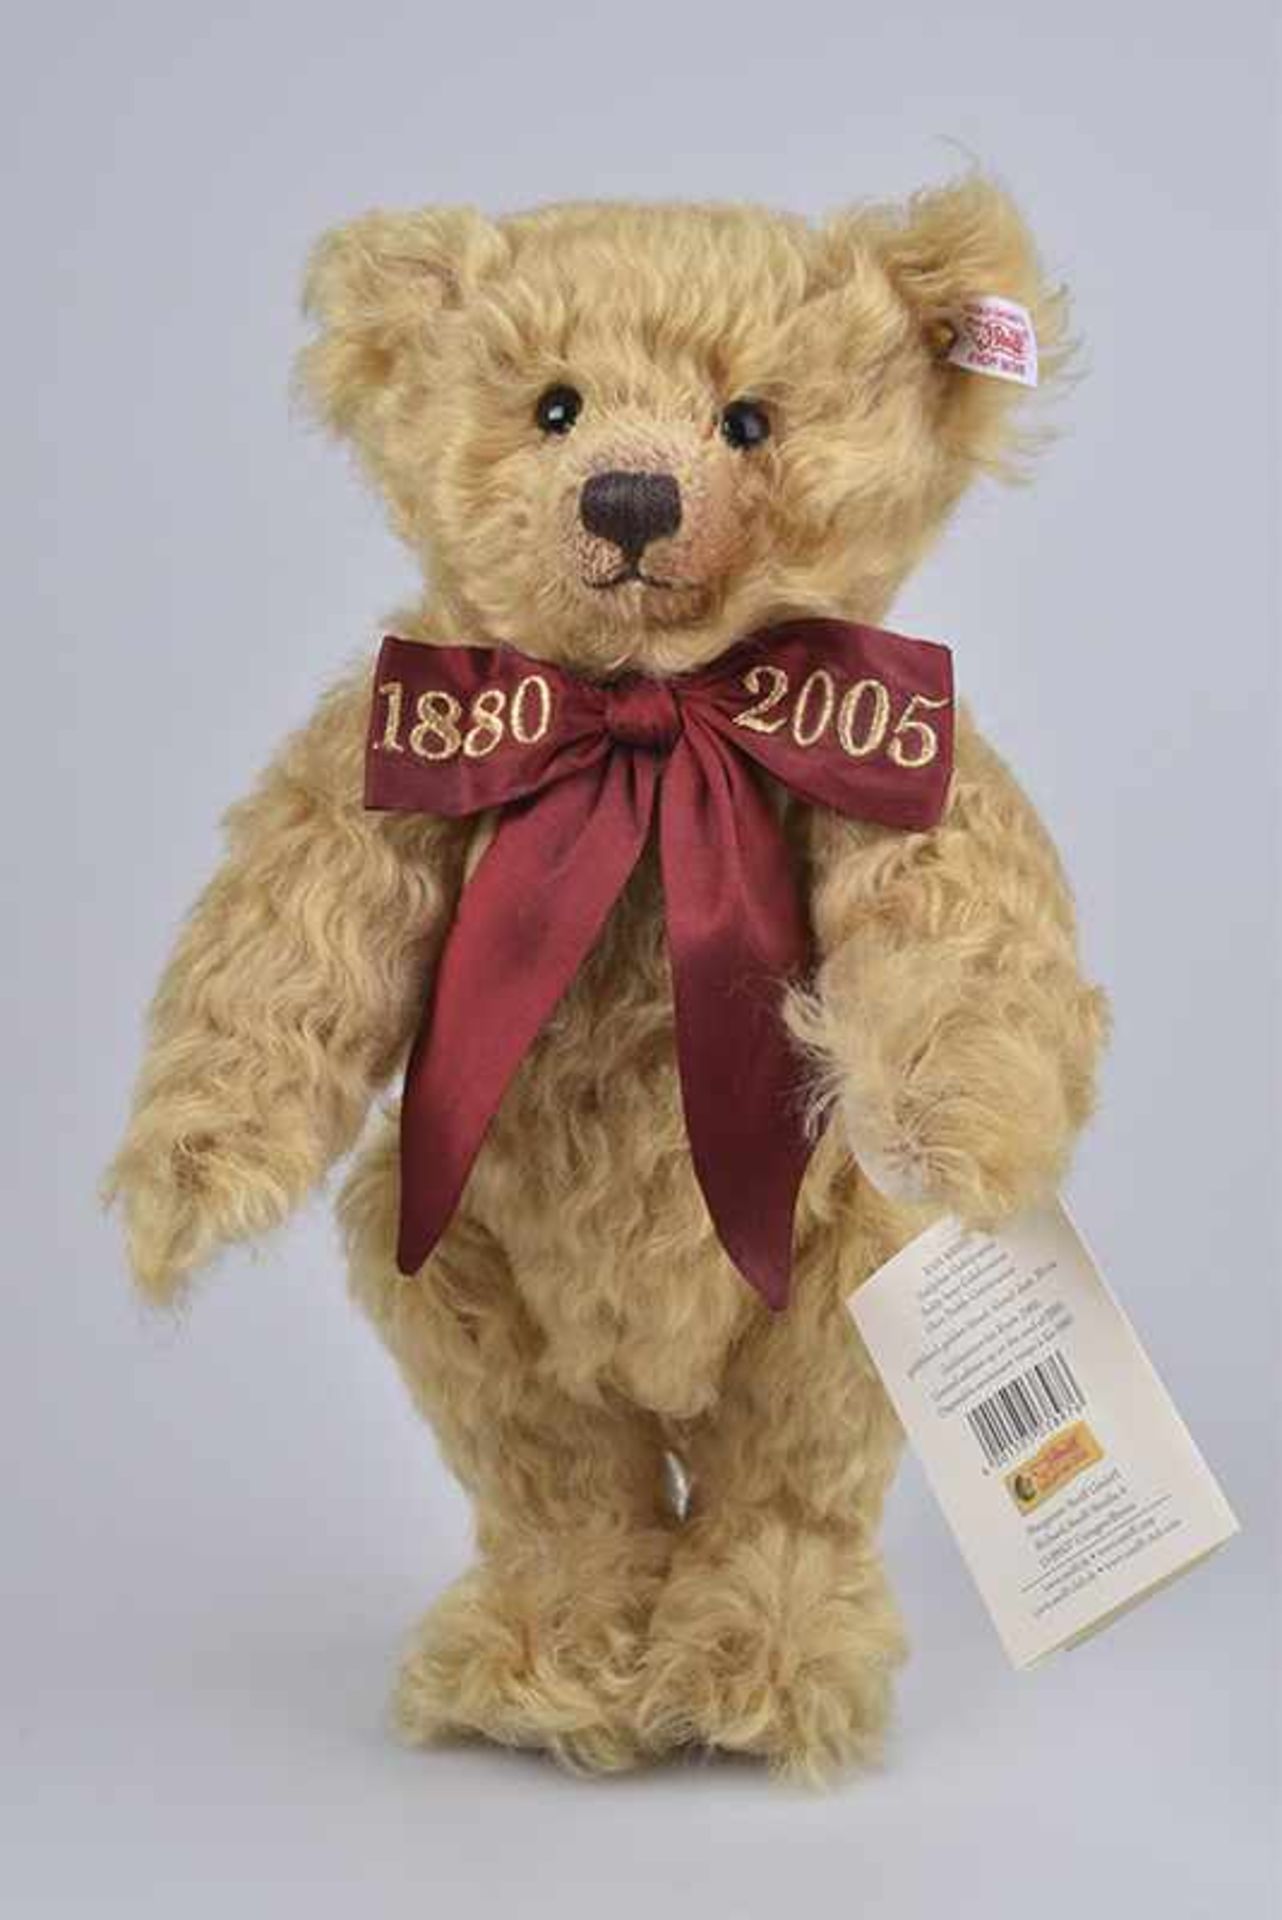 STEIFF Teddybär Celebration, KF, Nr. 038976, limitierte Auflage mit Zertifikat, 125 Jahre Steiff,